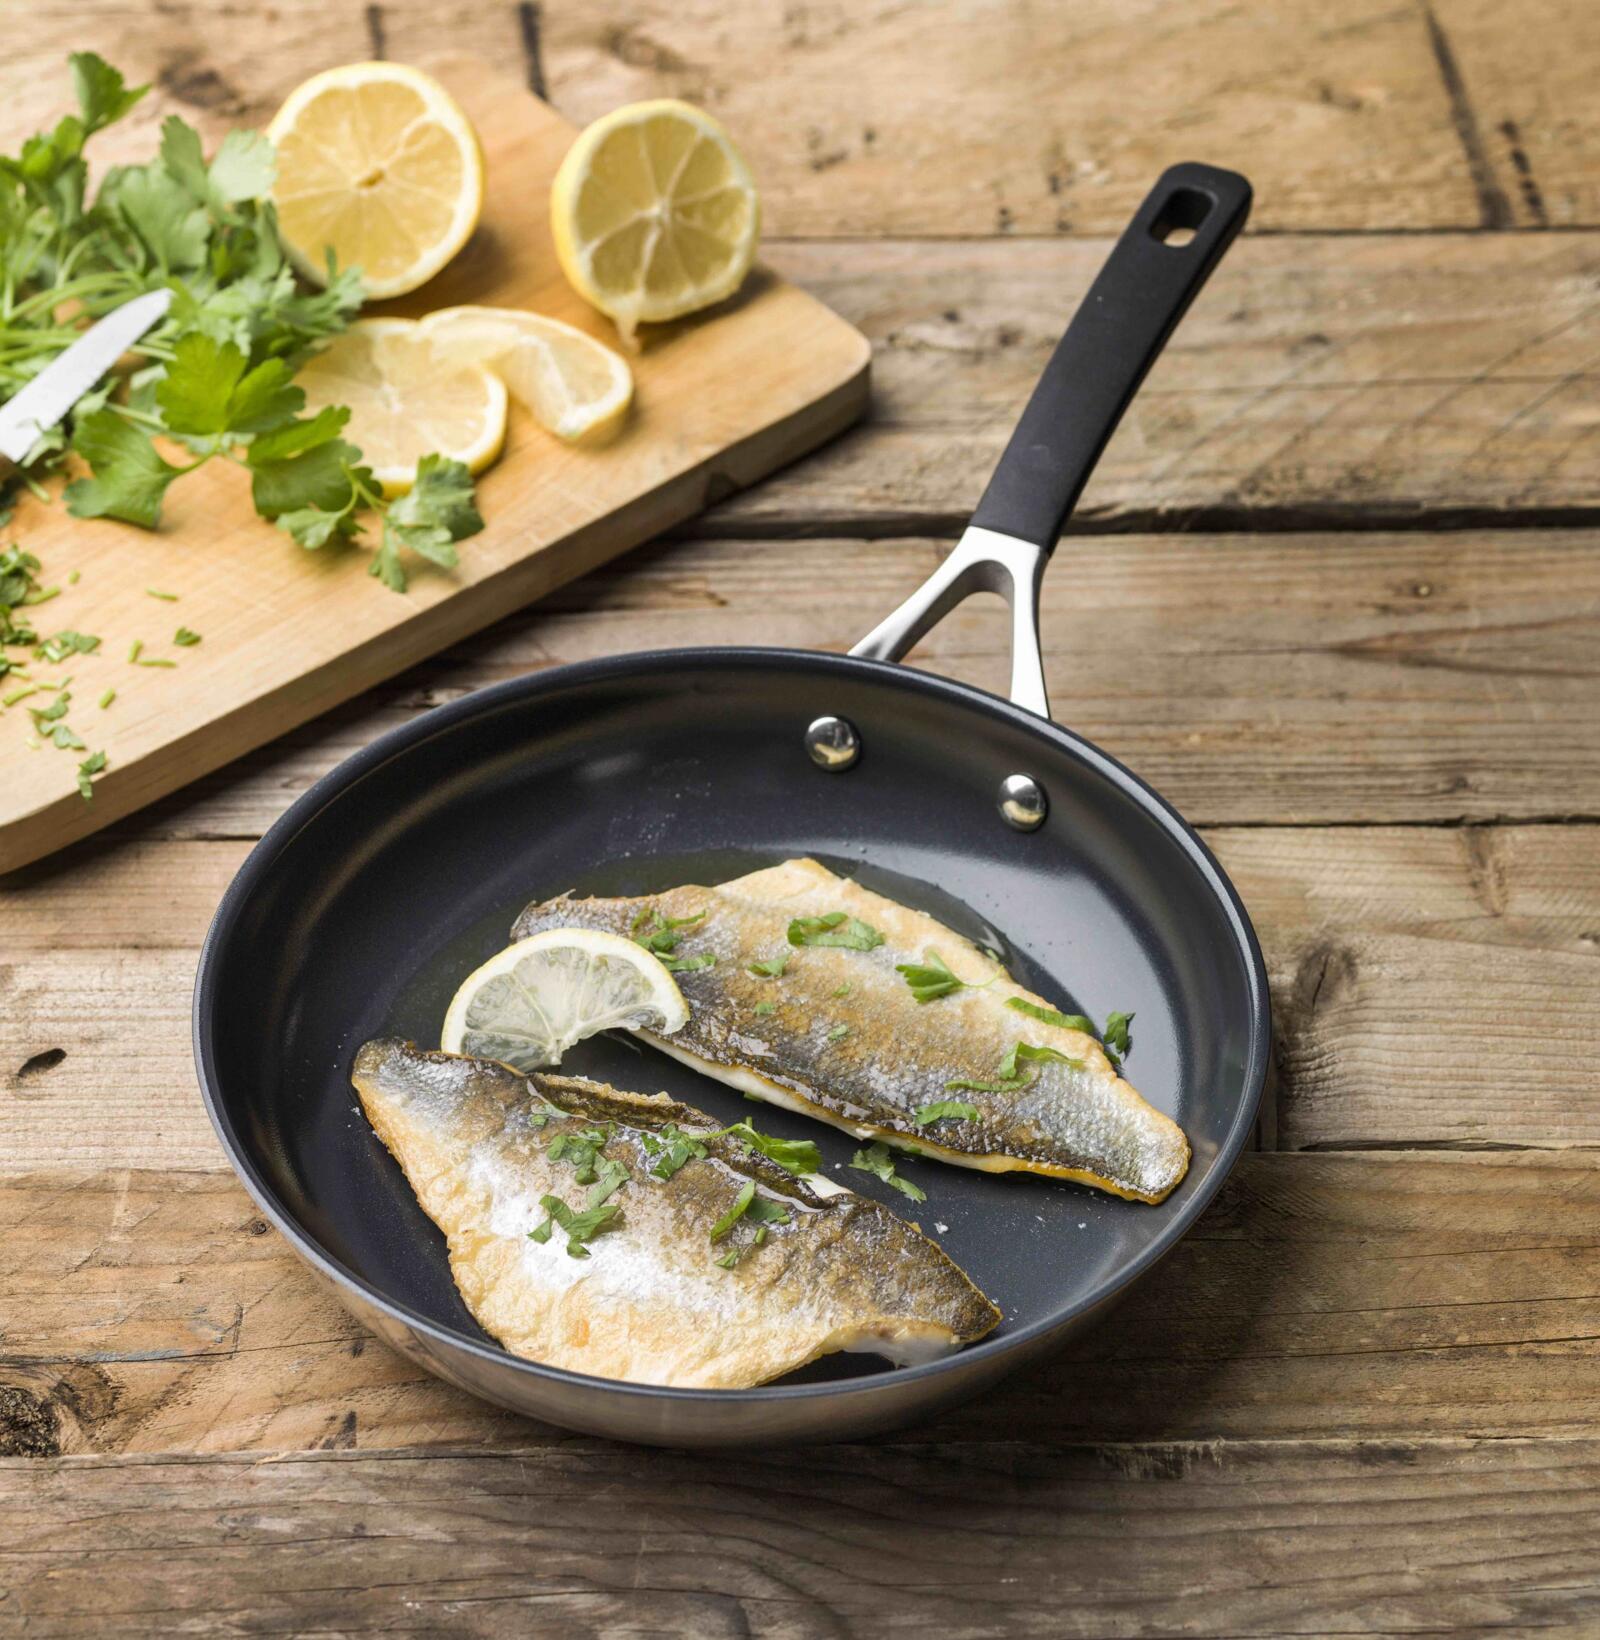 Welk soort pan gebruik ik best om vis in bakken? | Dagelijkse kost